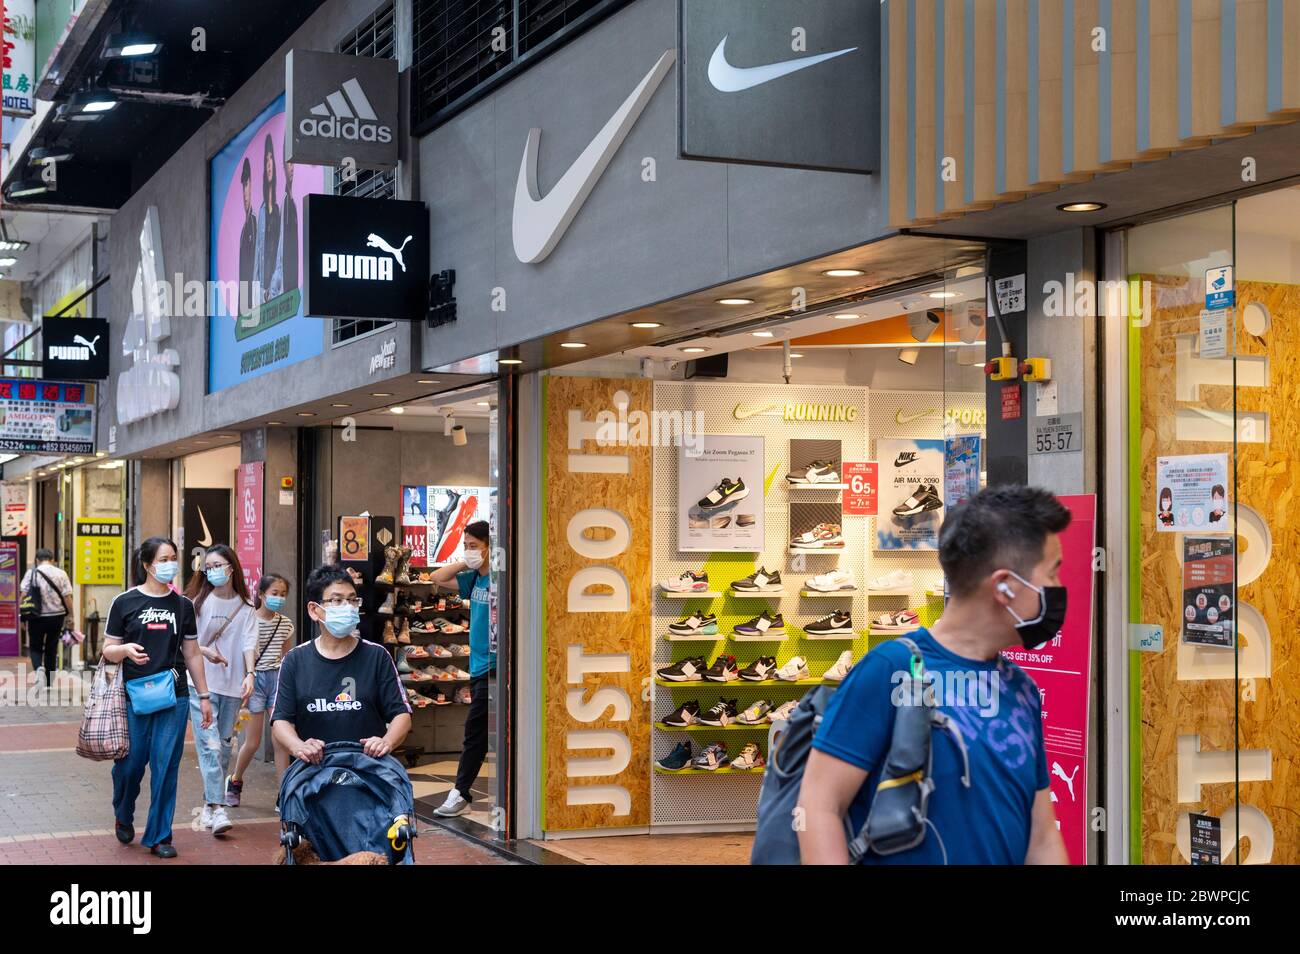 Marcas multinacionales de ropa deportiva Adidas y logotipos Nike vistos en  una tienda en Hong Kong Fotografía de stock - Alamy